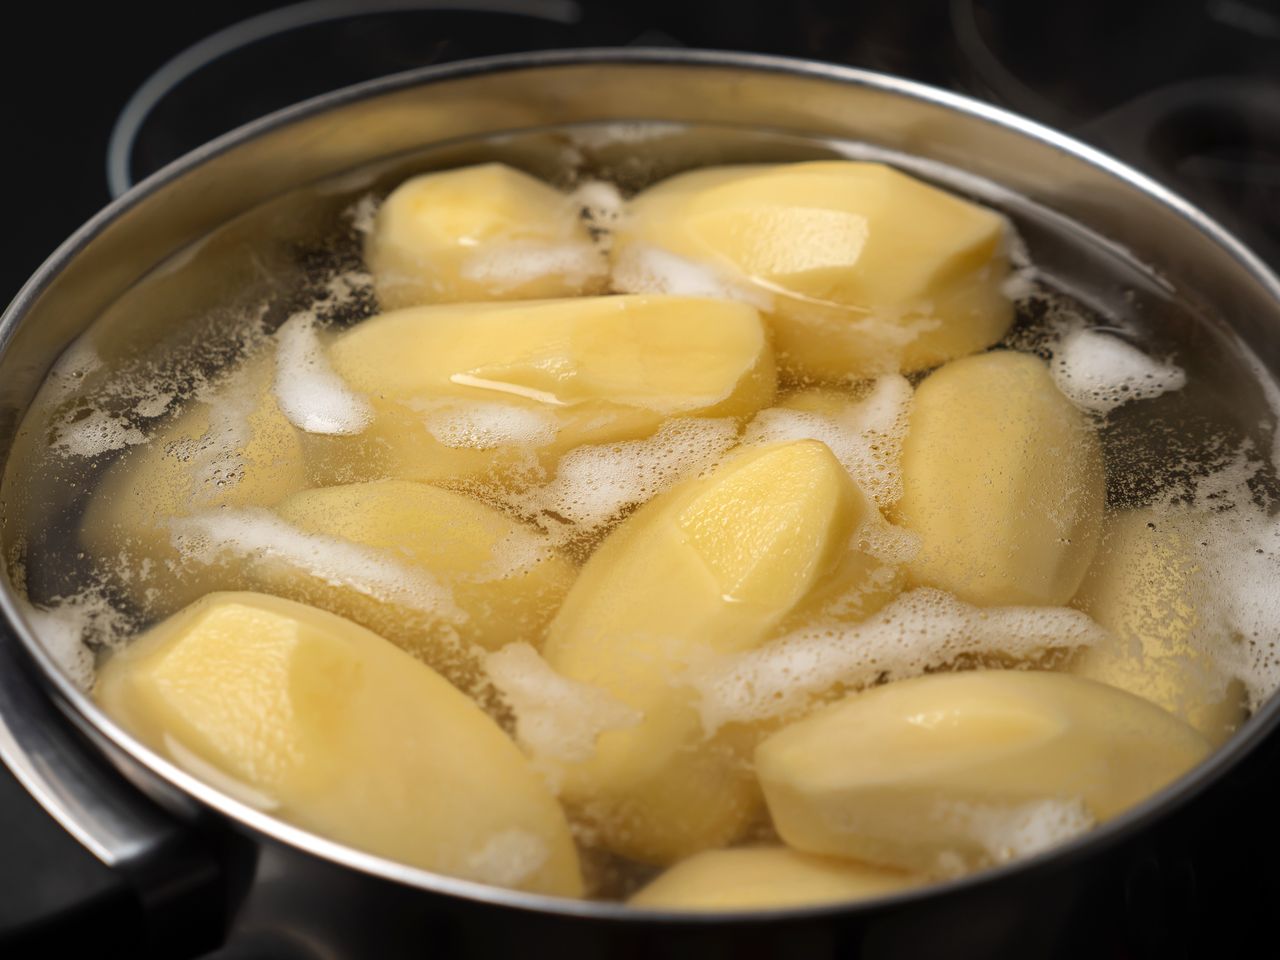 Ugotujesz ziemniaki w 5 minut. Niezawodny patent